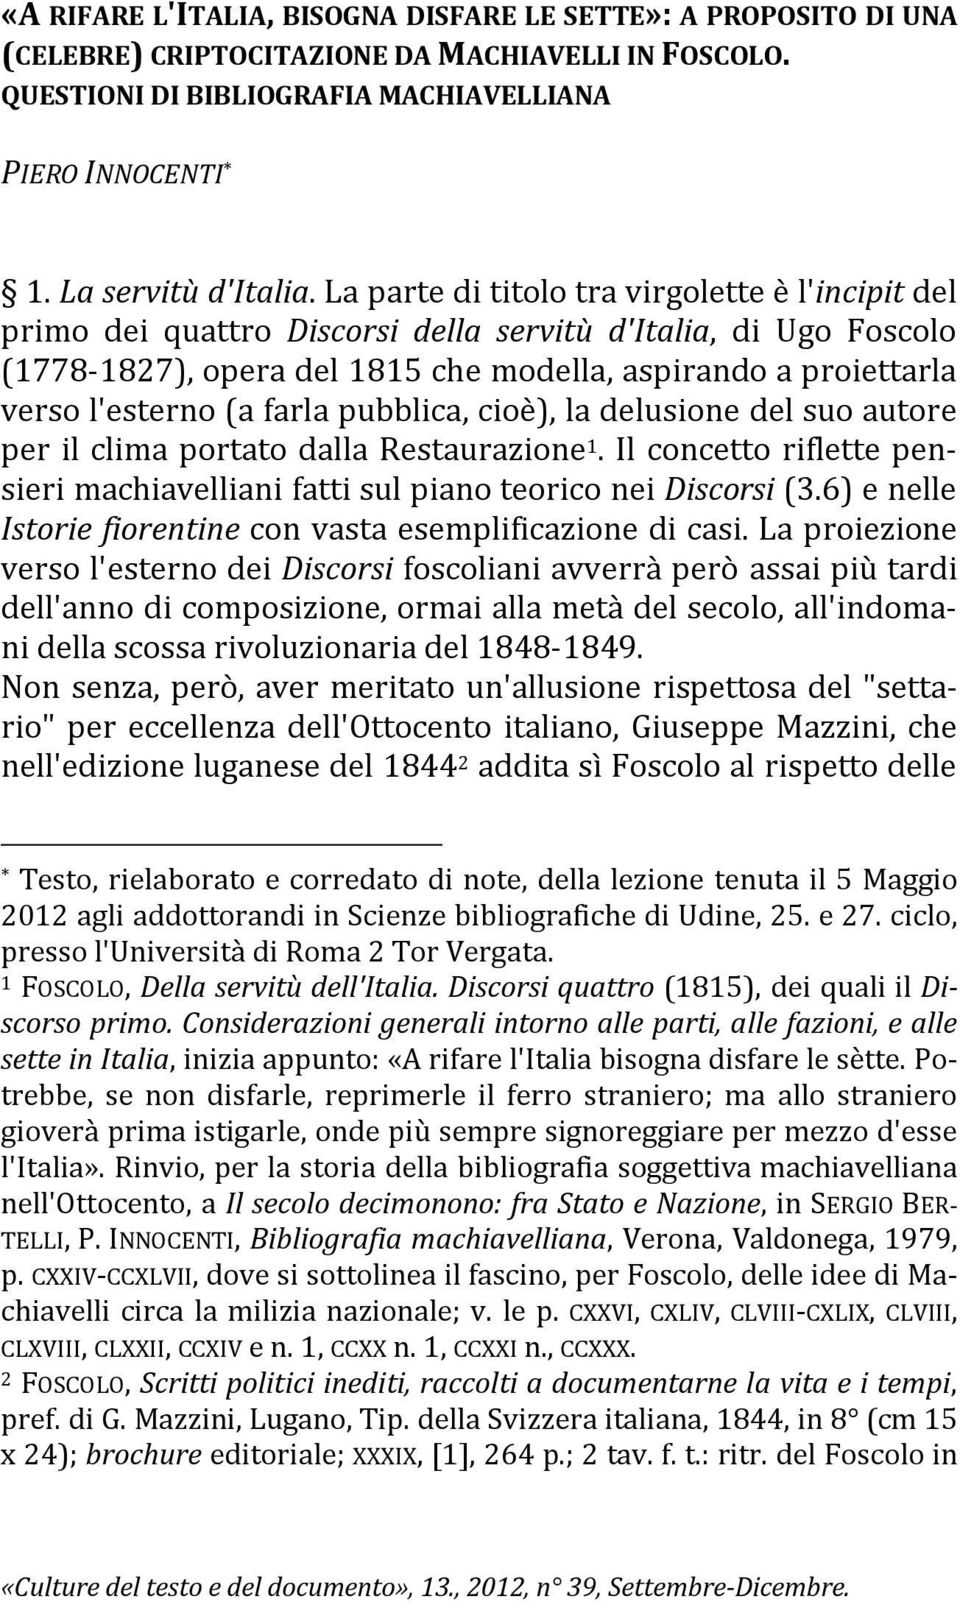 La parte di titolo tra virgolette è l'incipit del primo dei quattro Discorsi della servitù d'italia, di Ugo Foscolo (1778-1827), opera del 1815 che modella, aspirando a proiettarla verso l'esterno (a